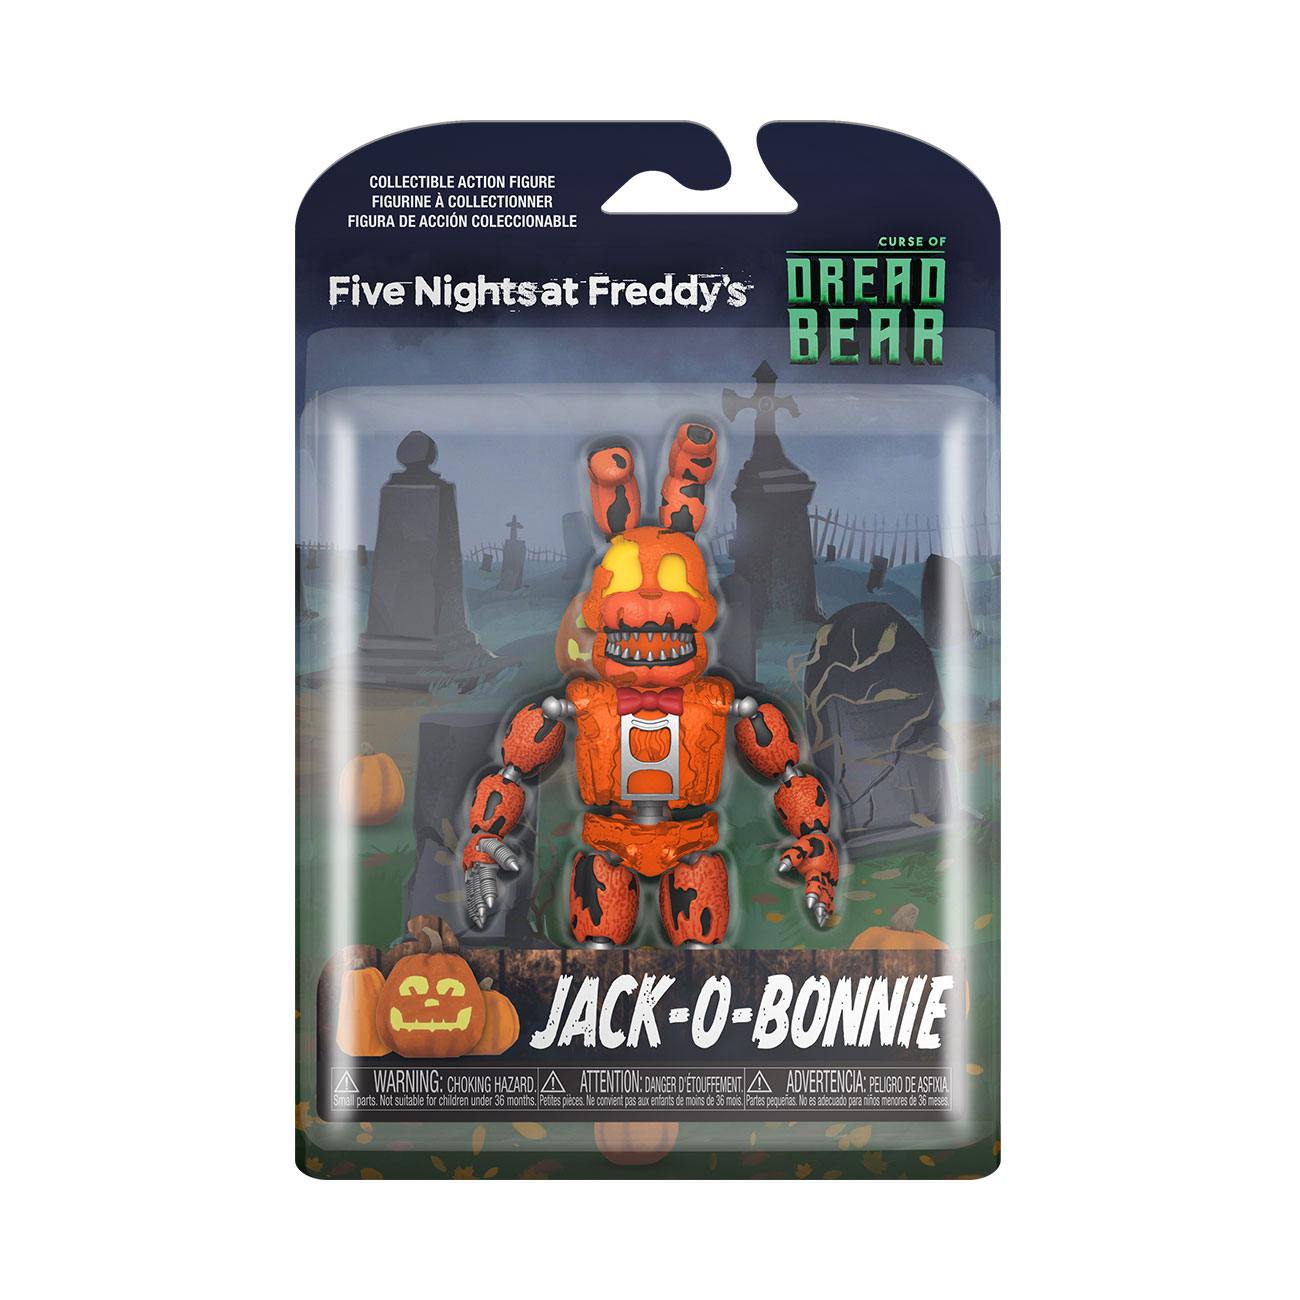 Five Nights at Freddy's: Dreadbear - Jack-o-Bonnie MERCHANDISE